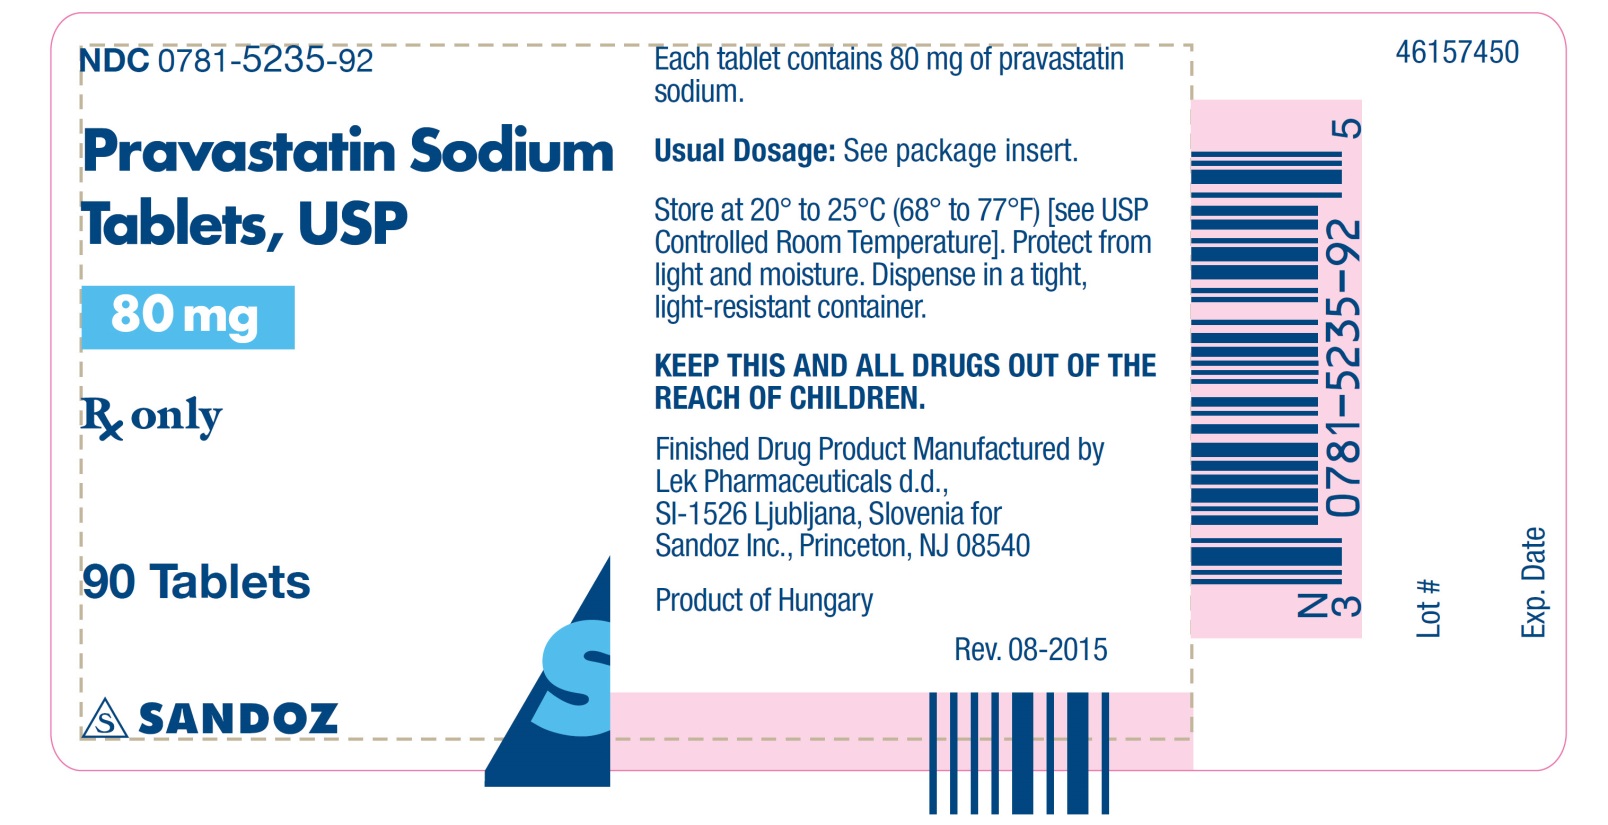 80 mg label